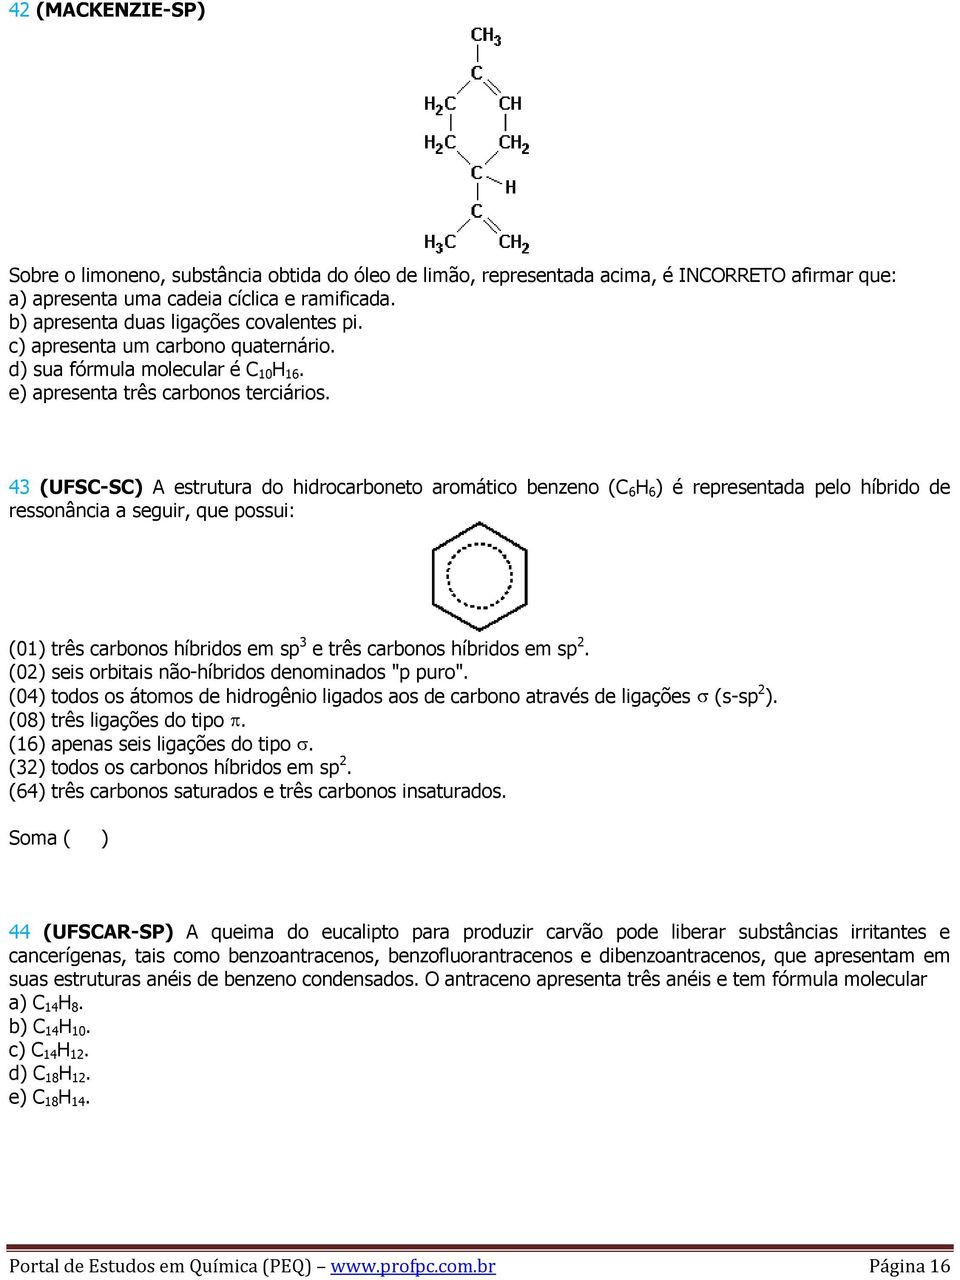 43 (UFSC-SC) A estrutura do hidrocarboneto aromático benzeno (C 6 H 6 ) é representada pelo híbrido de ressonância a seguir, que possui: (01) três carbonos híbridos em sp 3 e três carbonos híbridos